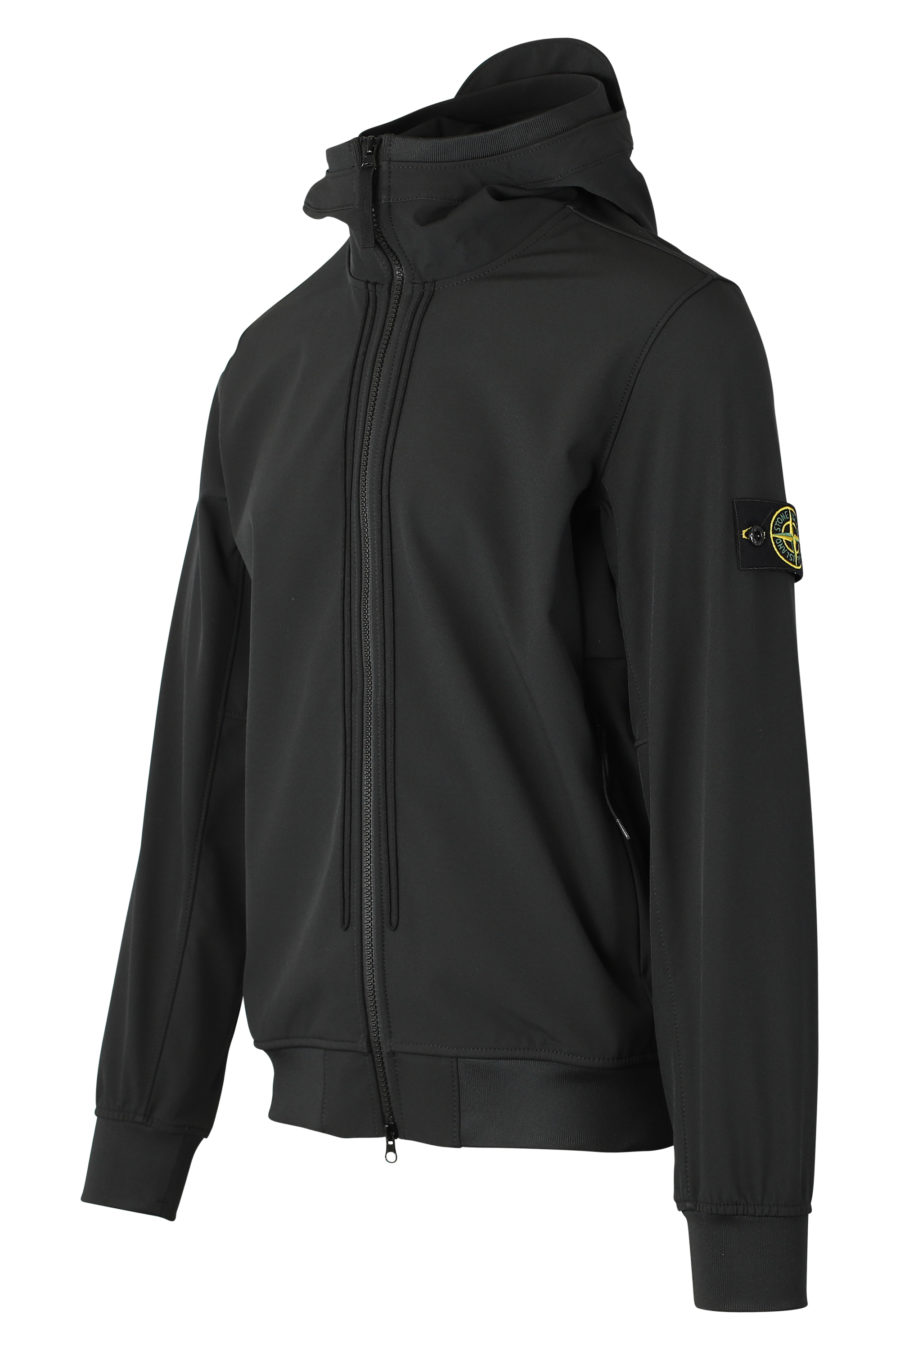 Chaqueta negra con capucha y logotipo parche - IMG 9307